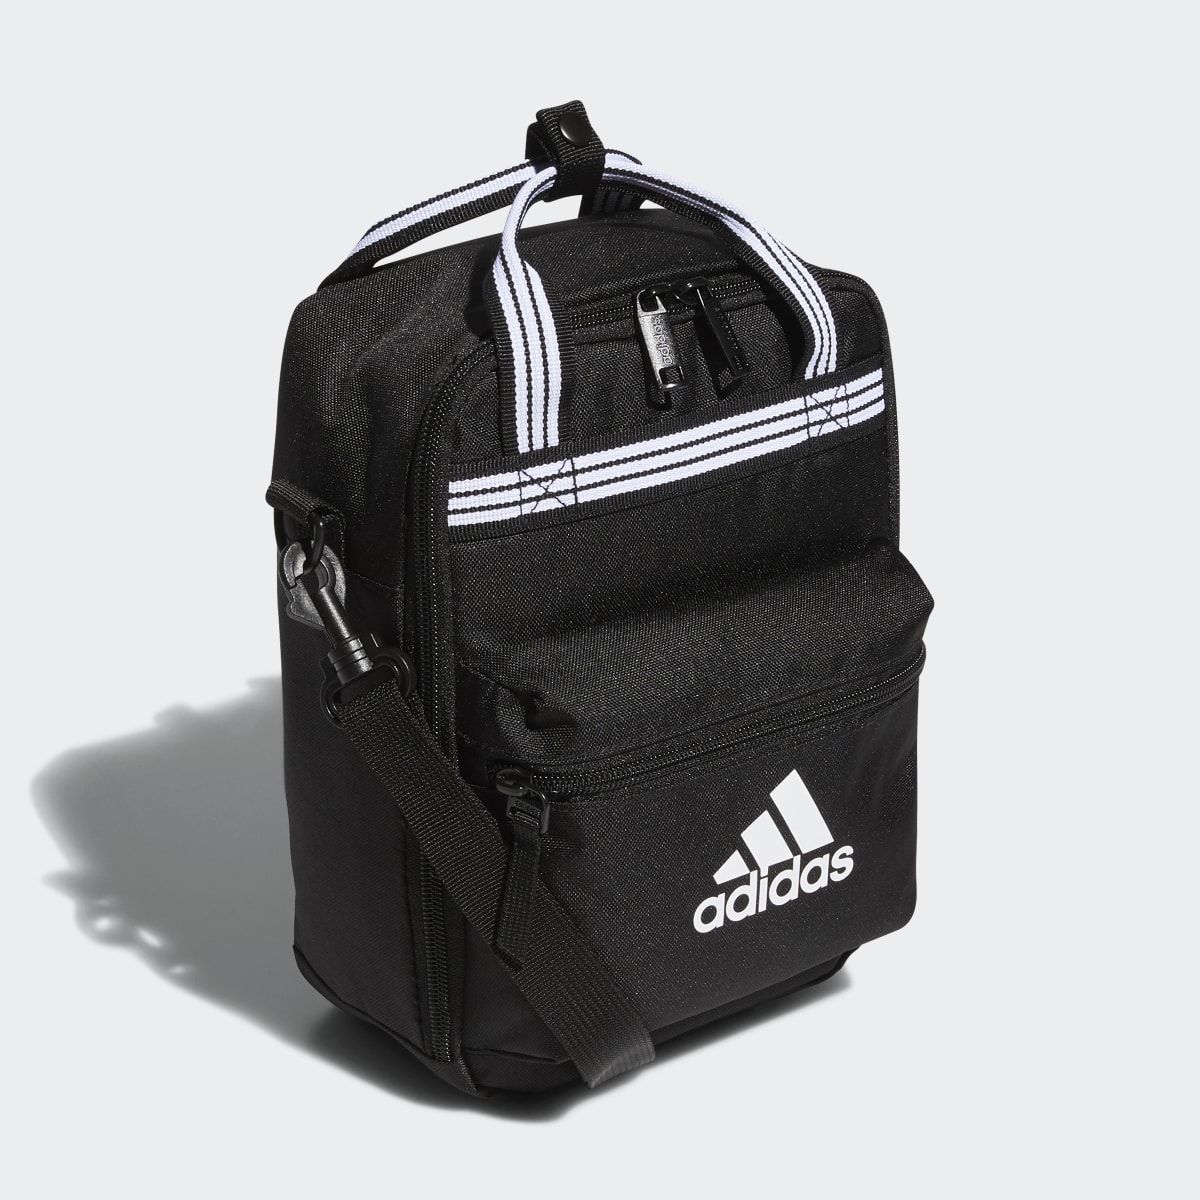 Adidas Squad Lunch Bag. 4